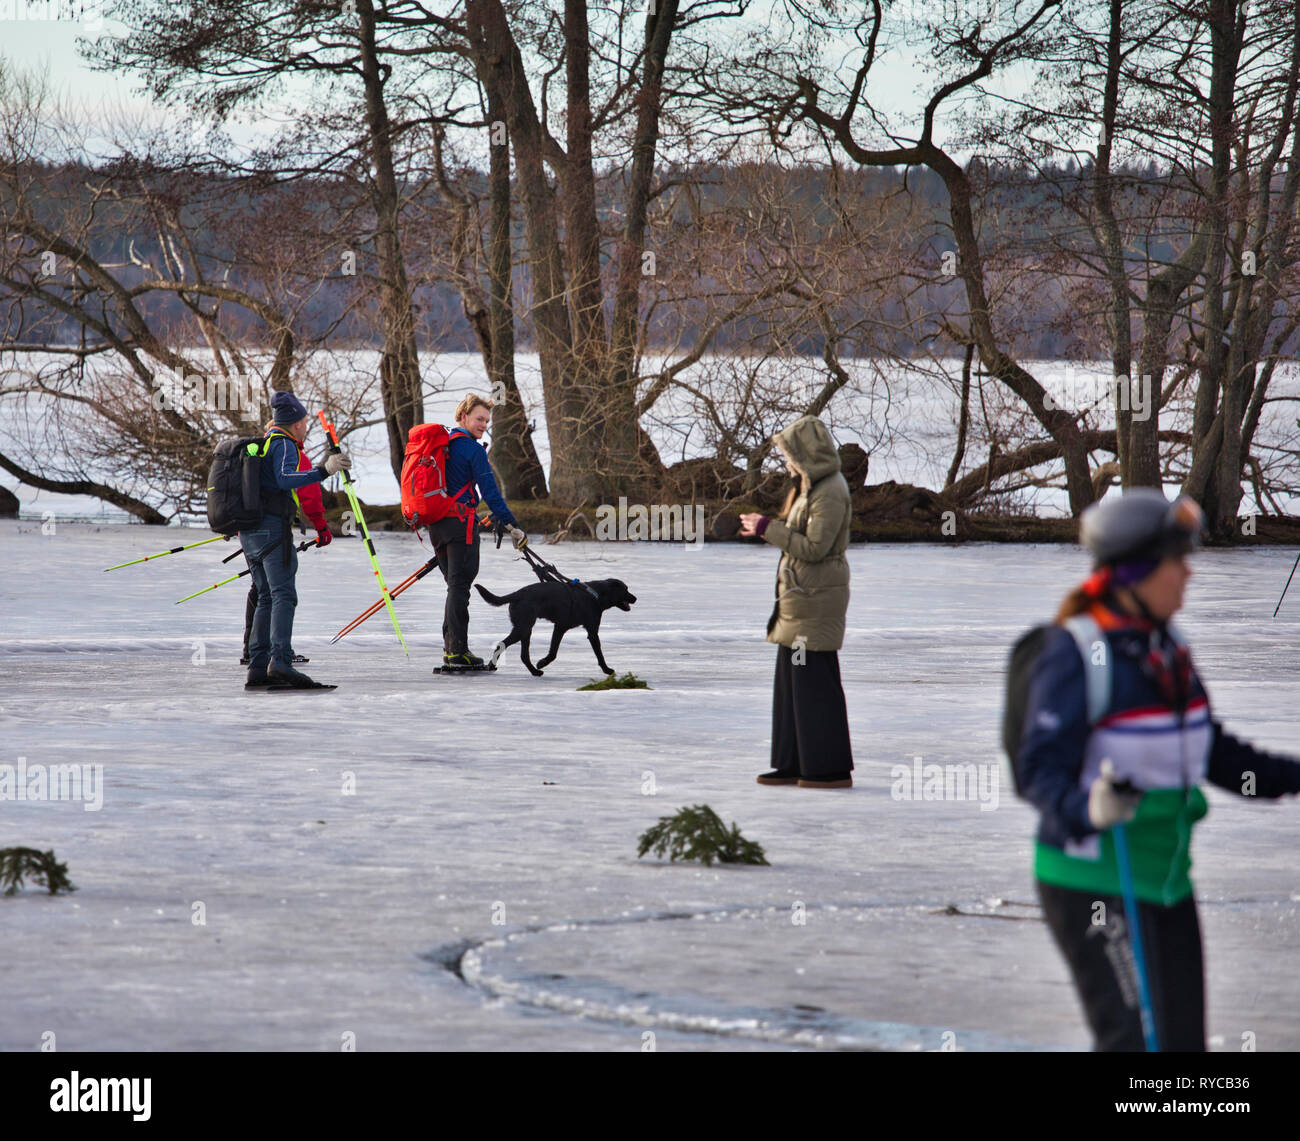 Los patinadores sobre hielo de larga distancia con labrador negro perro durante Sigtunarannet Vikingarannet 2019 en el lago Malaren, Sigtuna, Suecia, Escandinavia Foto de stock